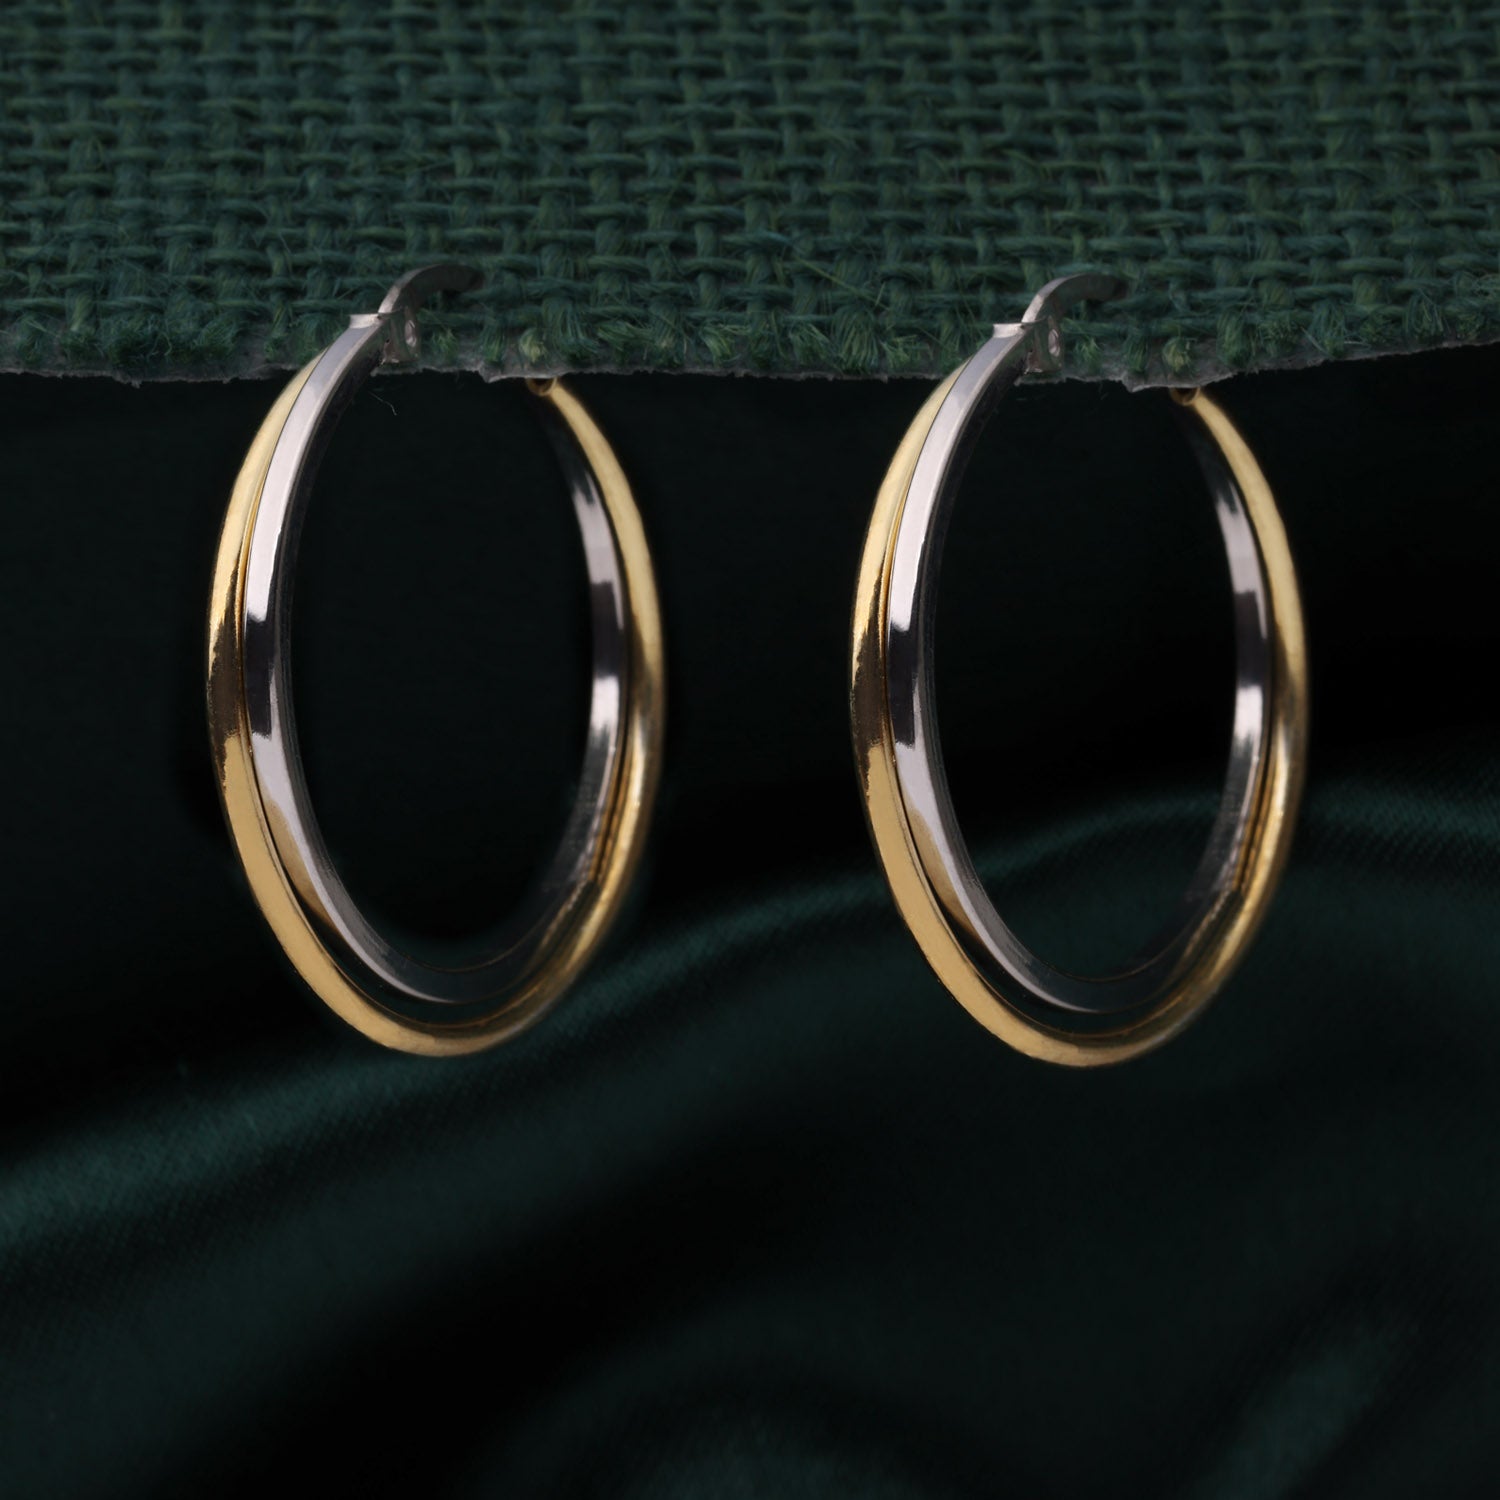 Sterling Silver Duo-Tone Hoop Earrings | SKU : 0002930138, 0002930169, 0002930152, 0002930121, 0002930176, 0002930114